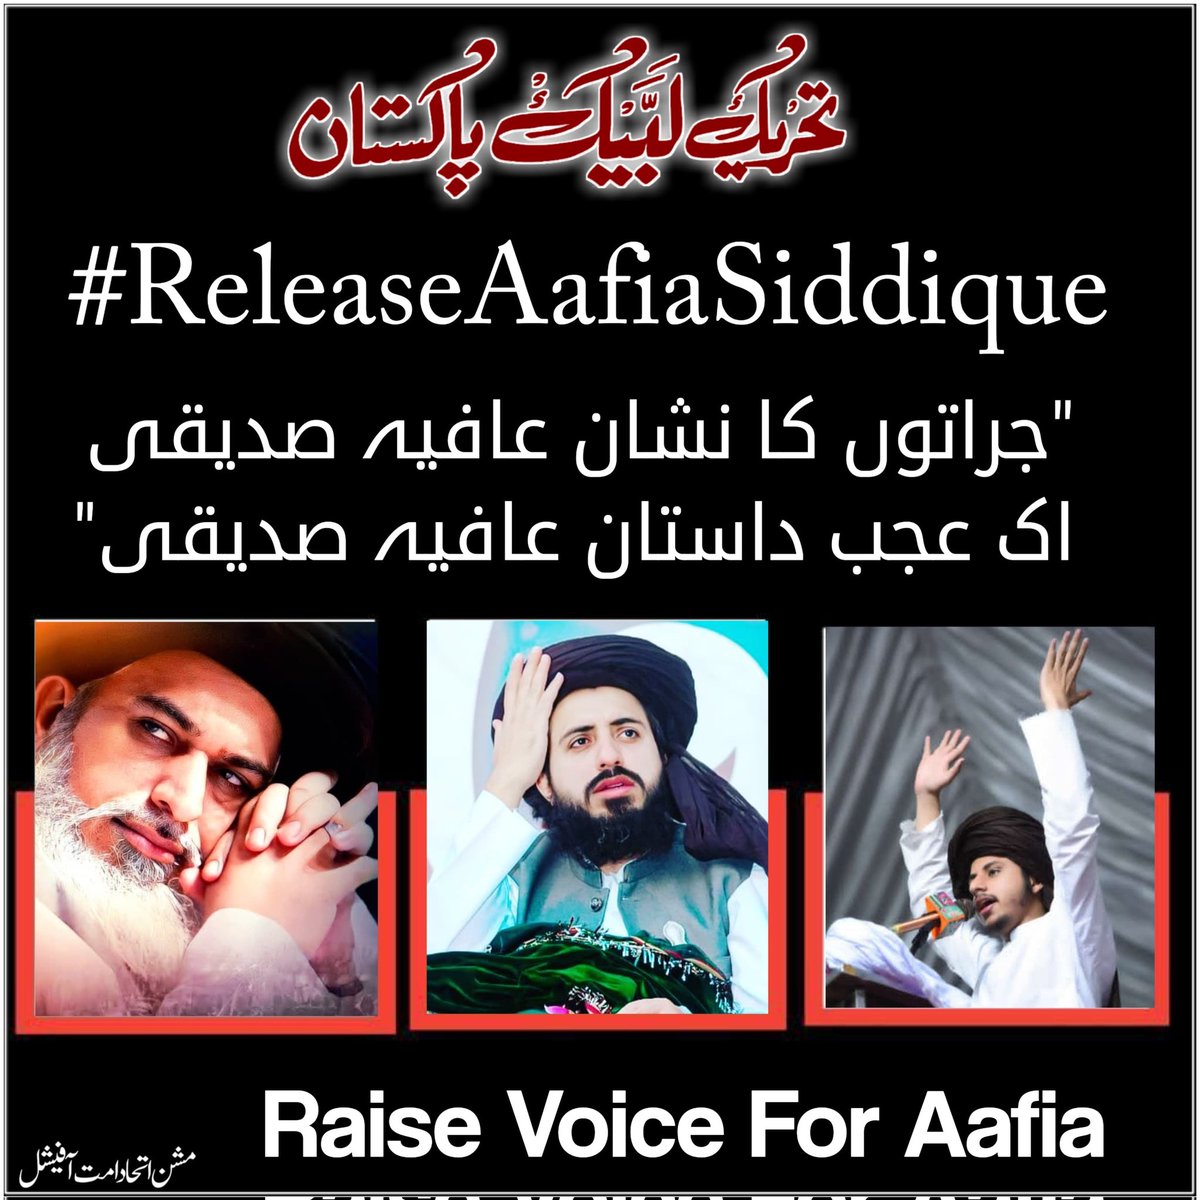 جراتوں کا نشان عافیہ صدیقی✊🏻                                                       اک عجب داستان عافیہ صدیقی🥀

#ReleaseAafiaSiddique
#missionittehadeummatofficial
#join_TLP✨